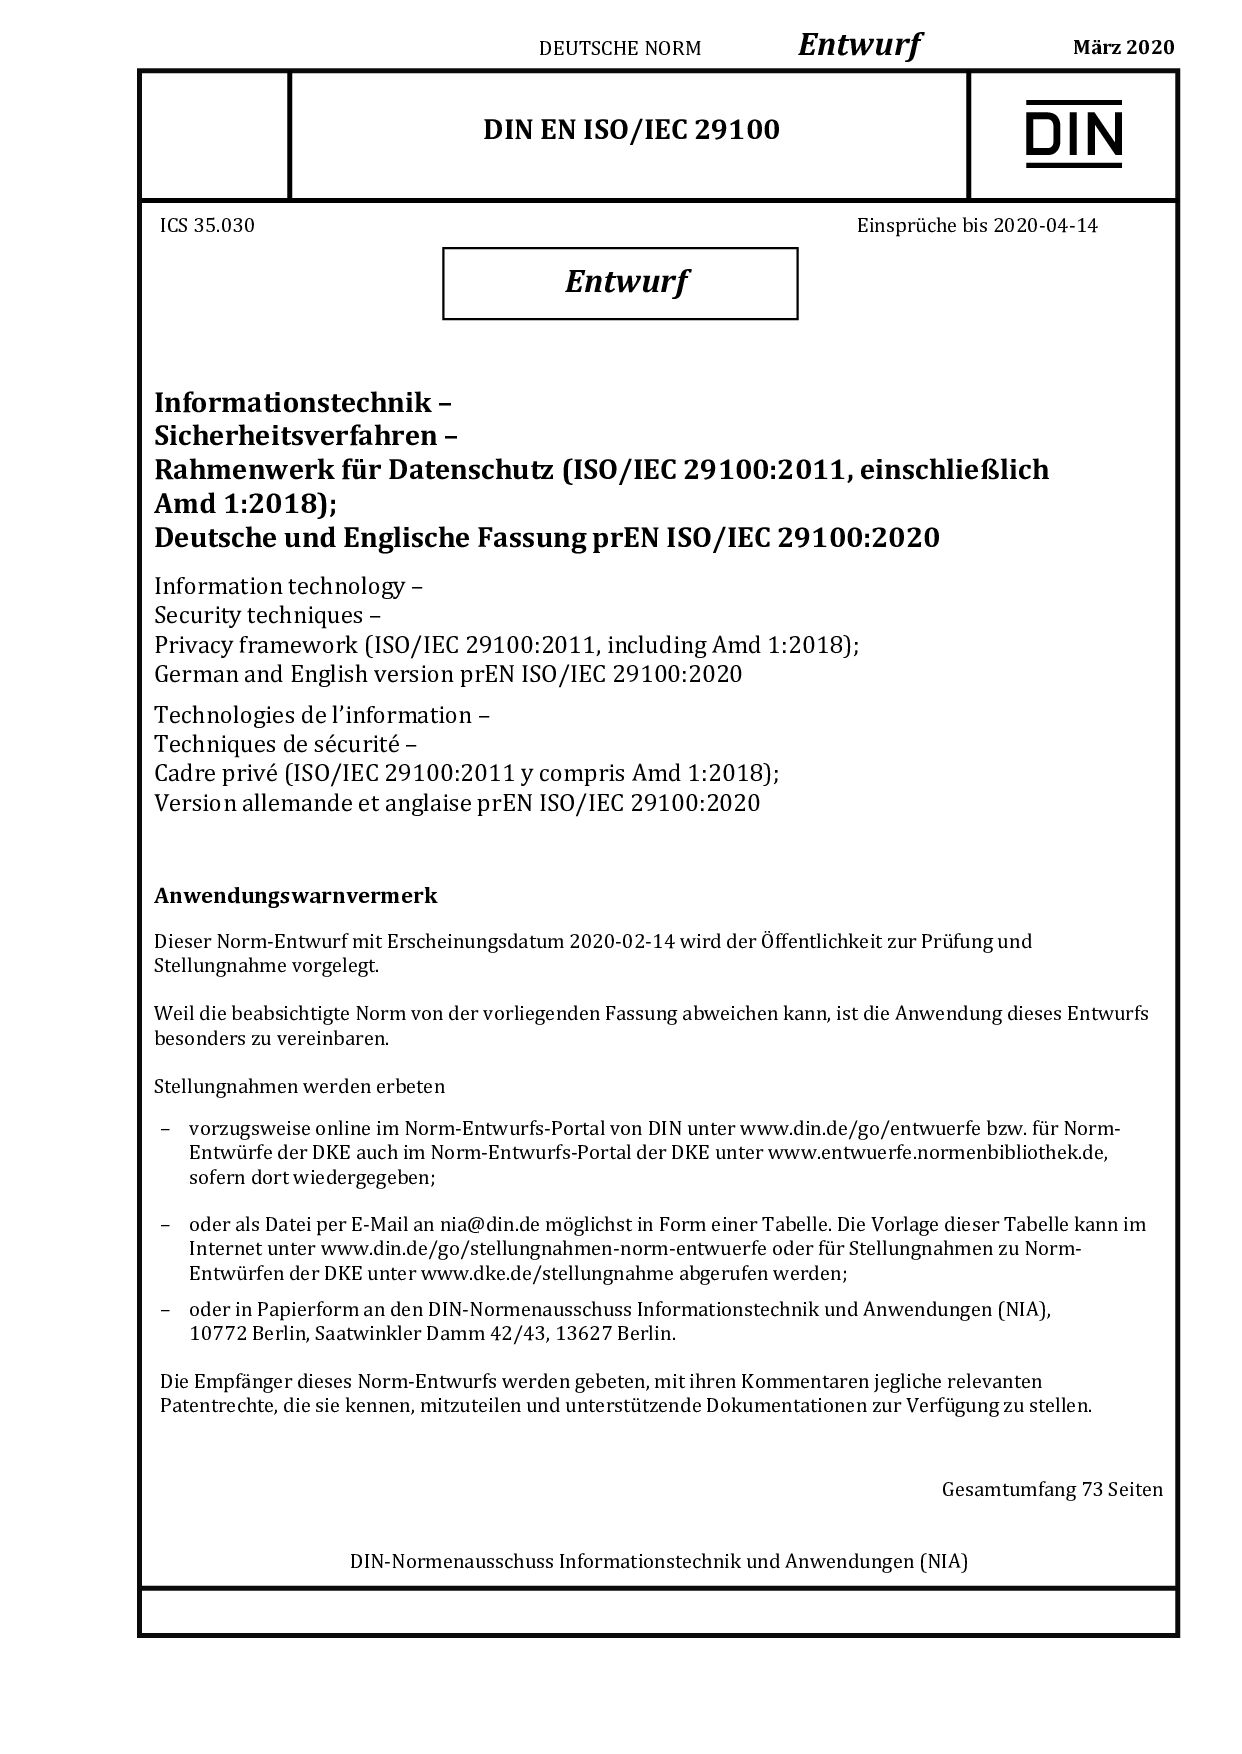 DIN EN ISO IEC 29100 E:2020-03